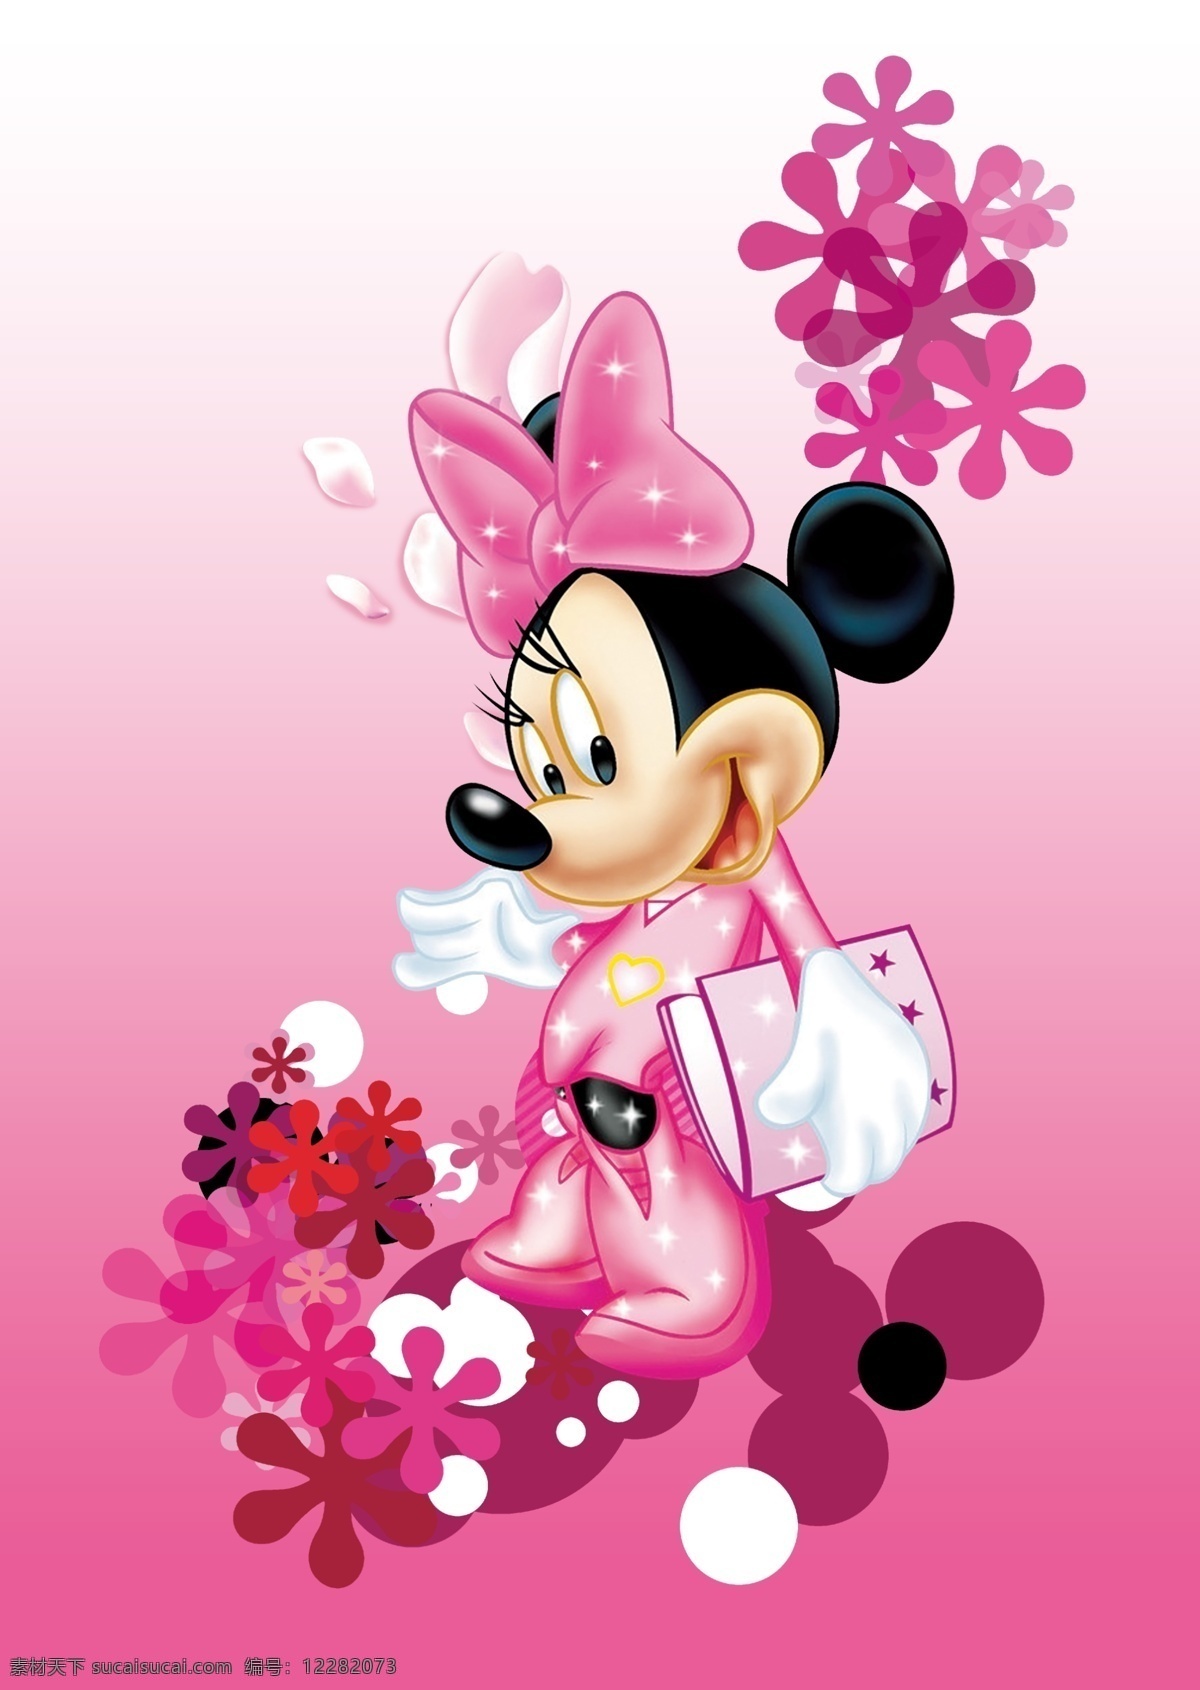 米妮 过度米妮 米老鼠 迪士尼 粉色米妮 服装设计